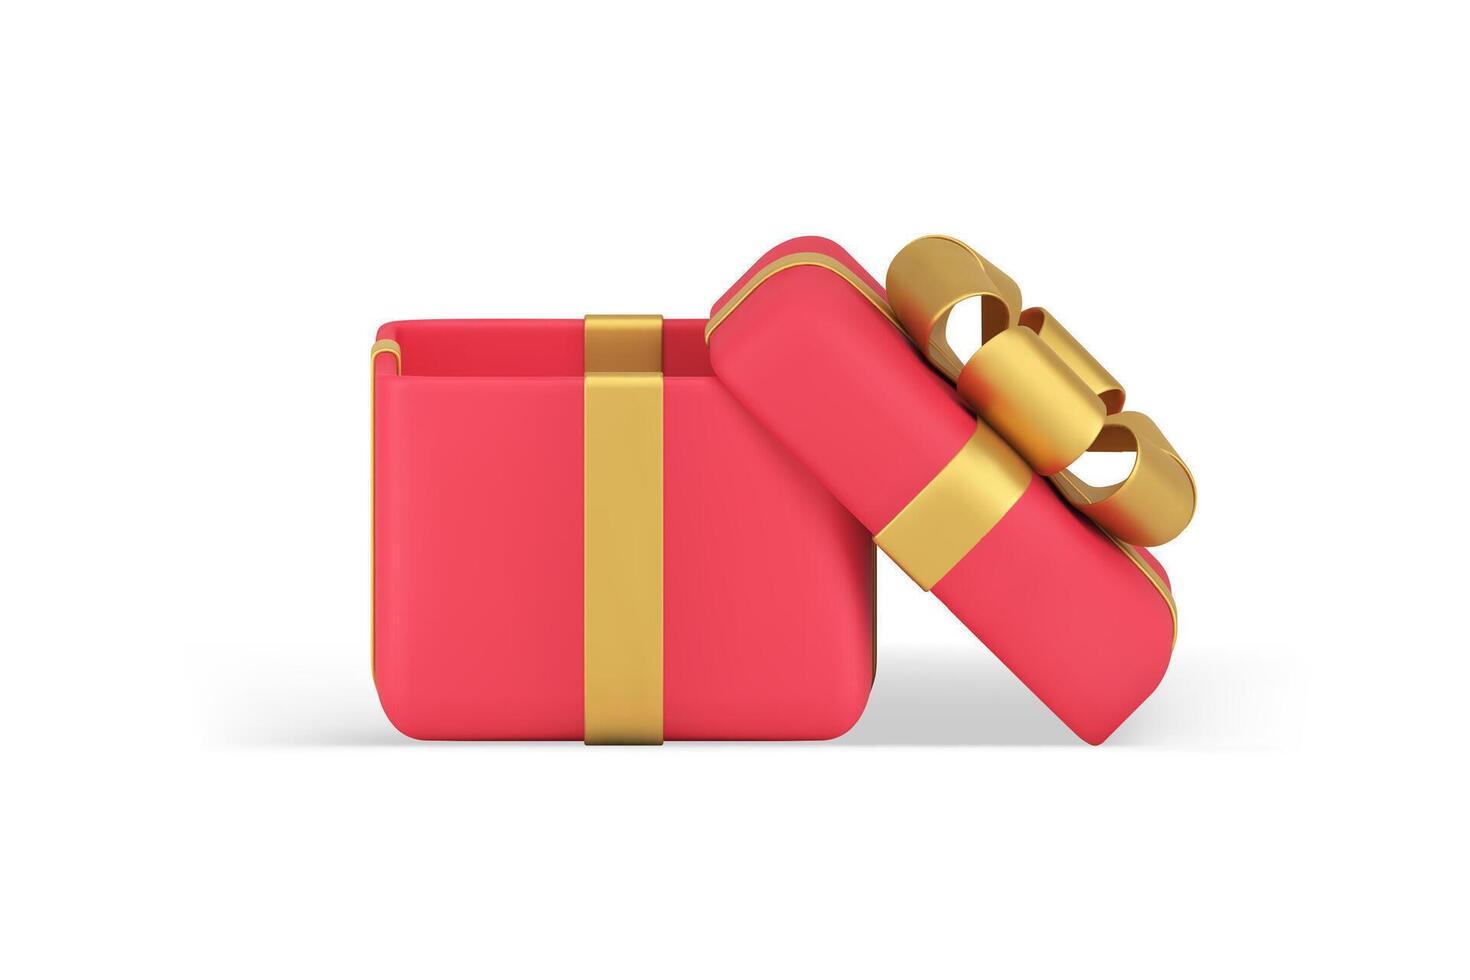 rot öffnen Geschenk Box mit golden Band Prämie Urlaub Überraschung realistisch 3d Symbol Illustration vektor